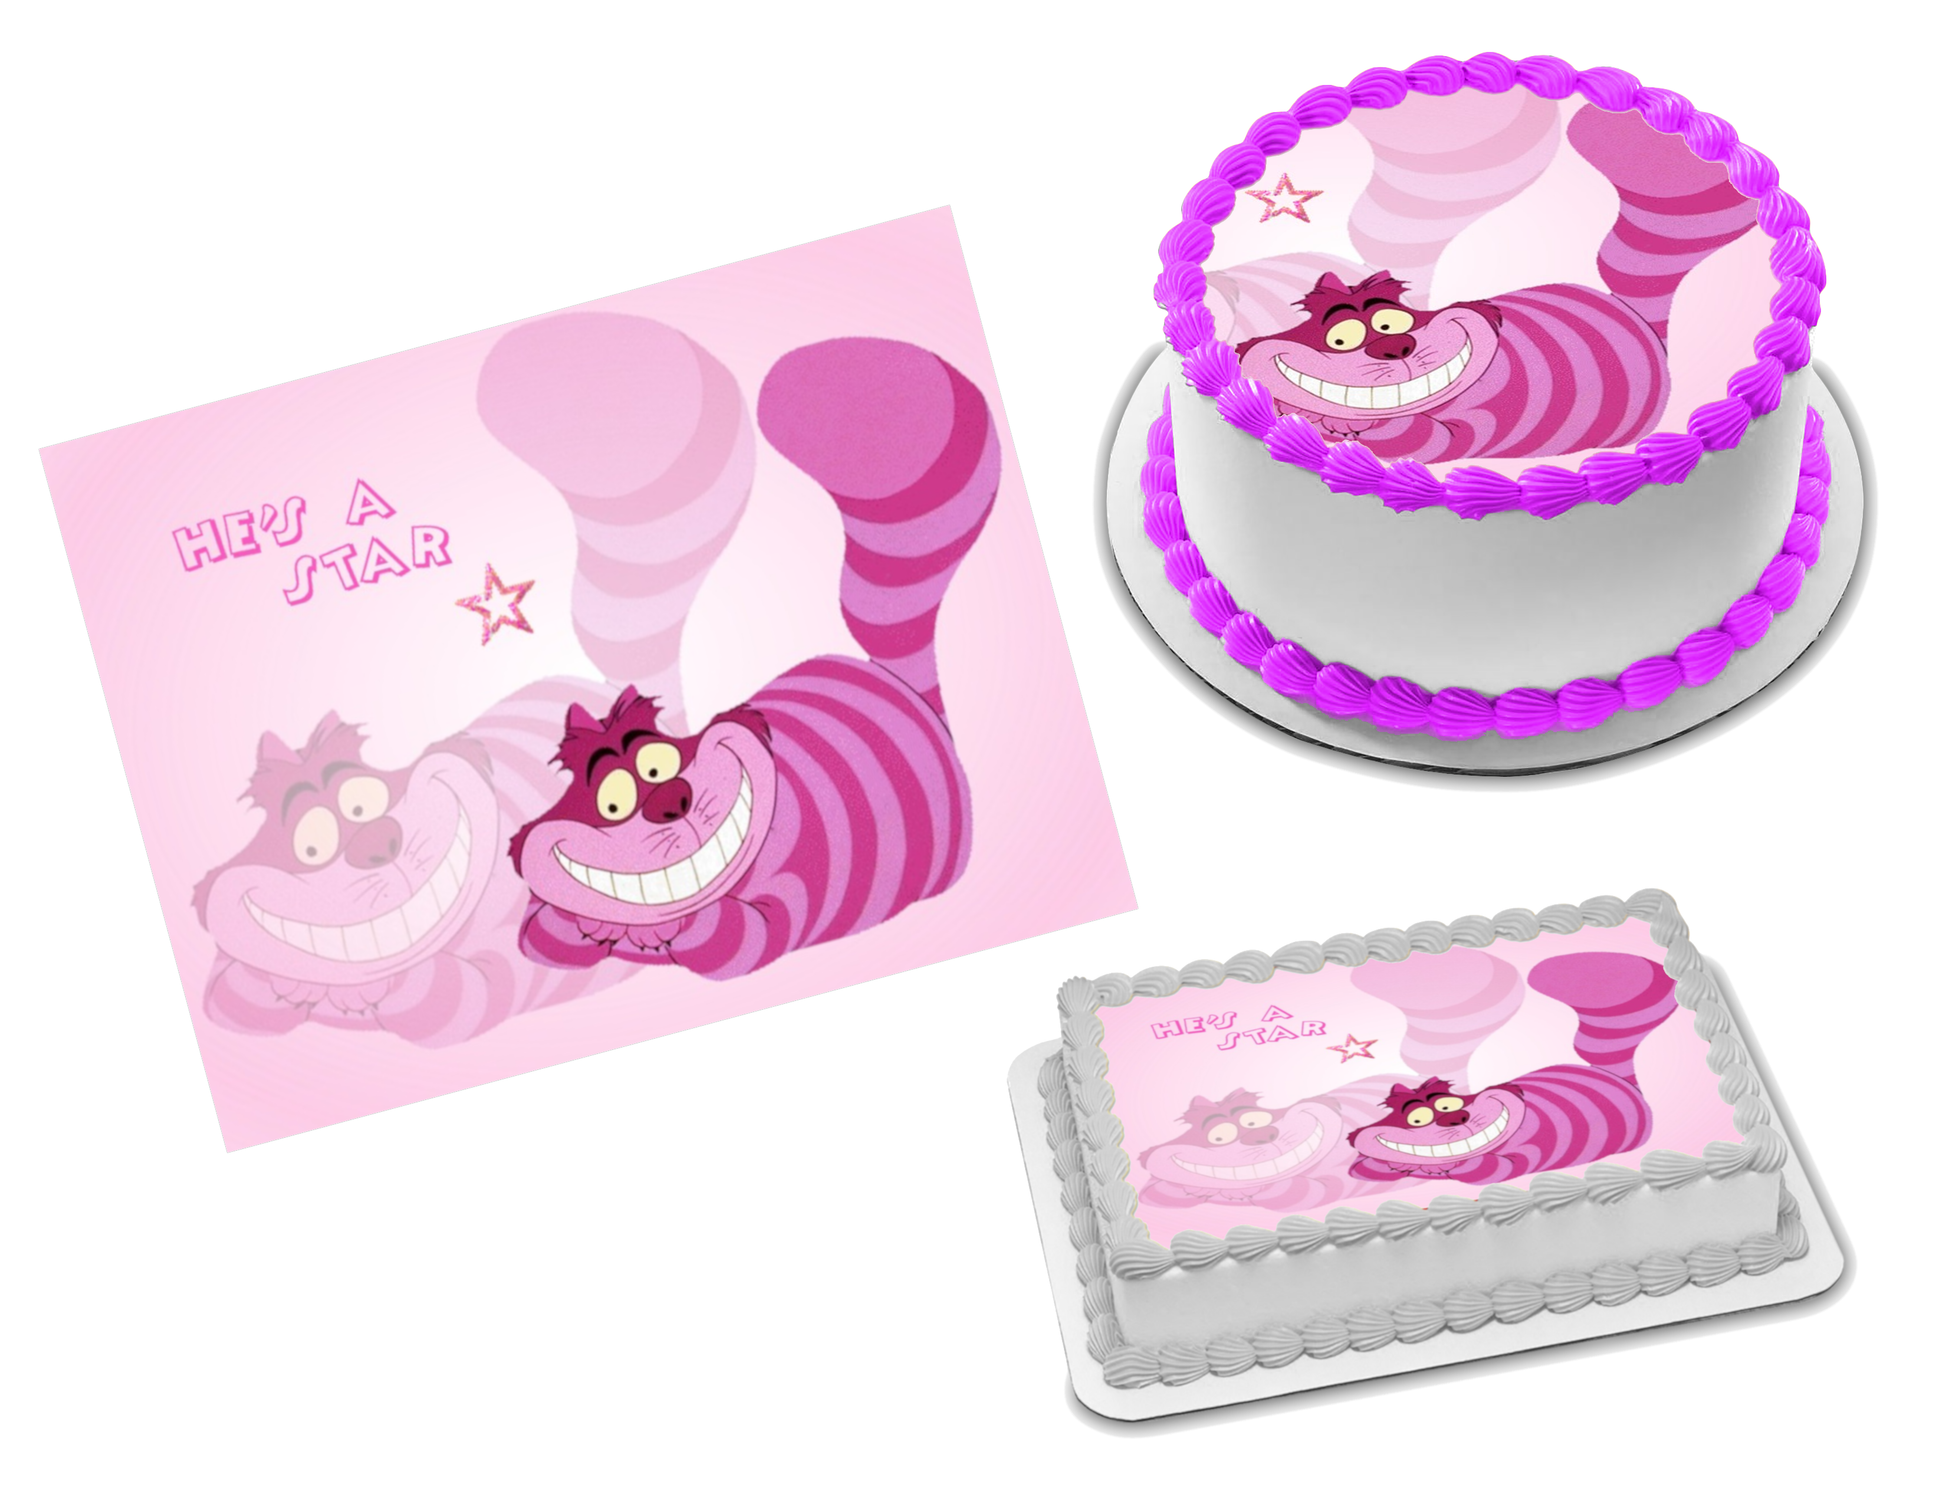 For Cheshire cat,Alice in wonderland cake,Handmade,Edible,Birthday